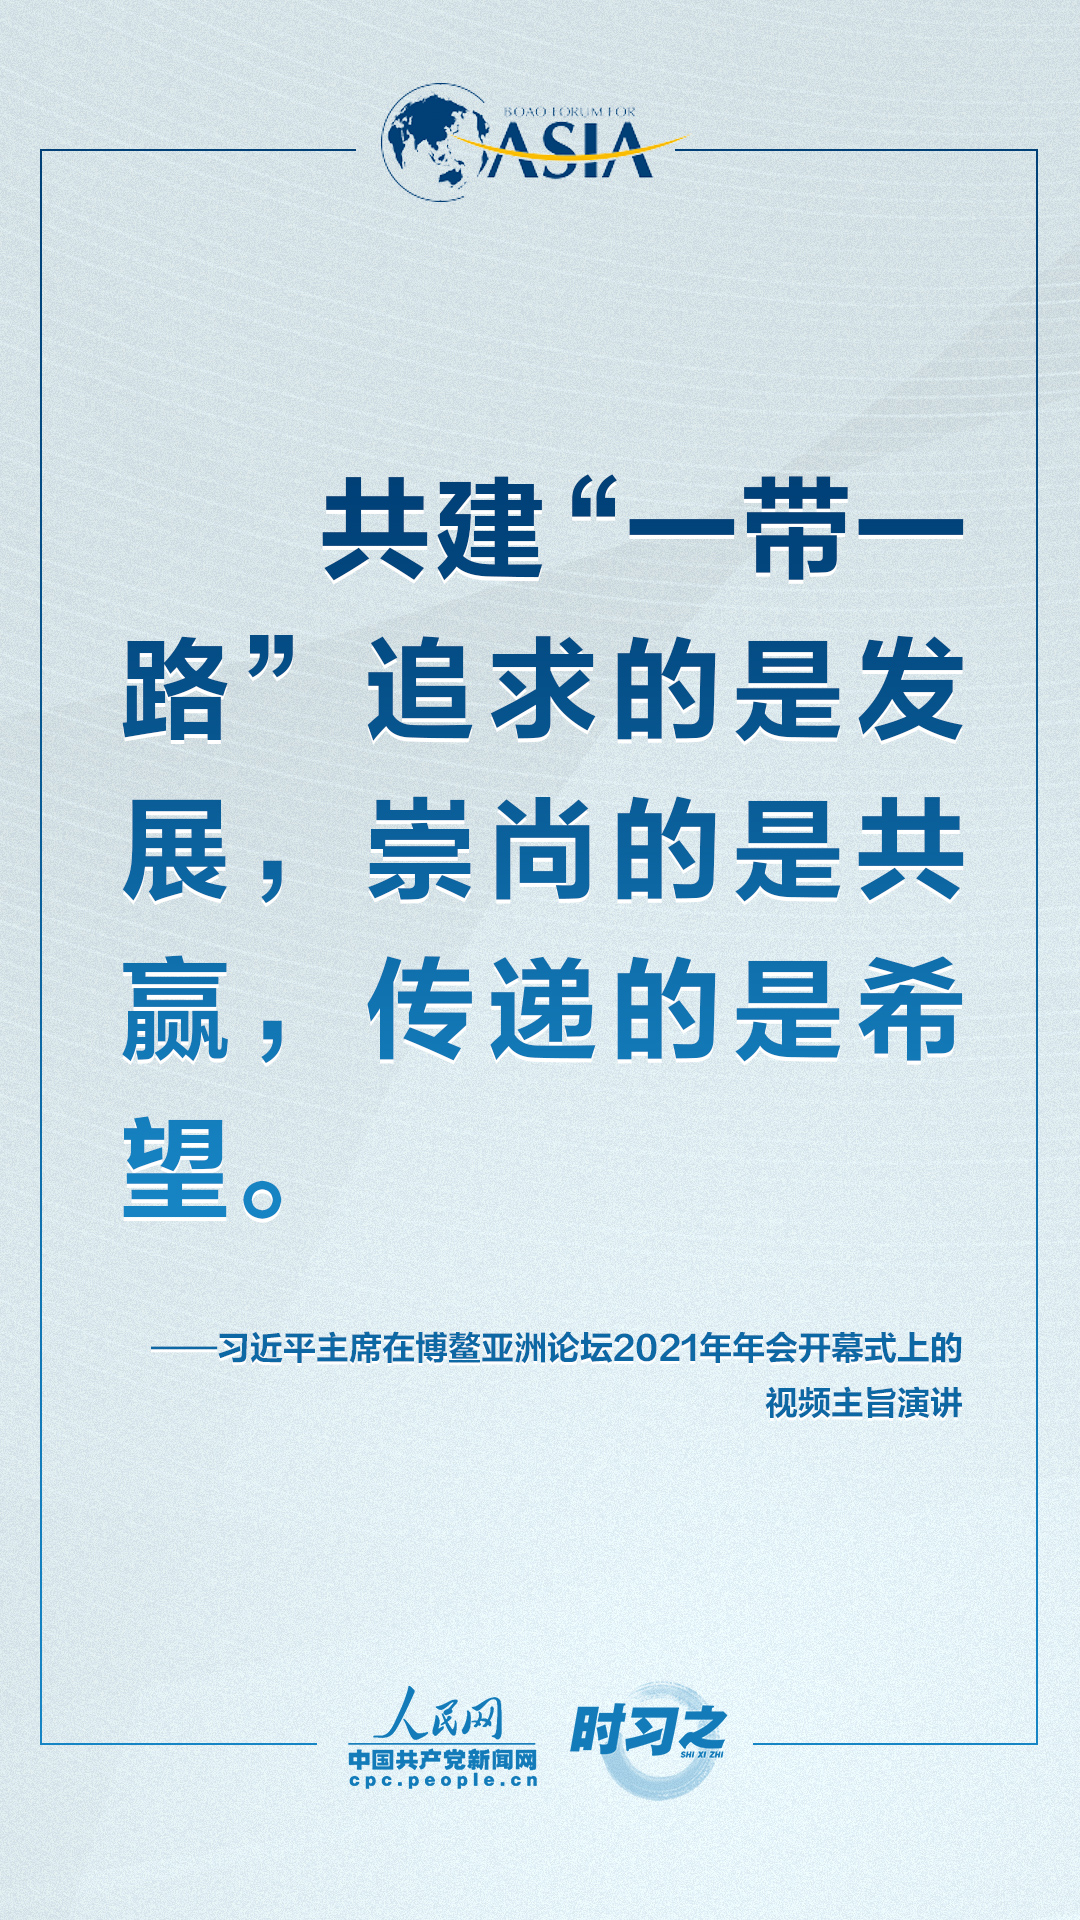 世界卫生组织将中国国药新冠预苗纳入“应急应用明细” 外交部回复